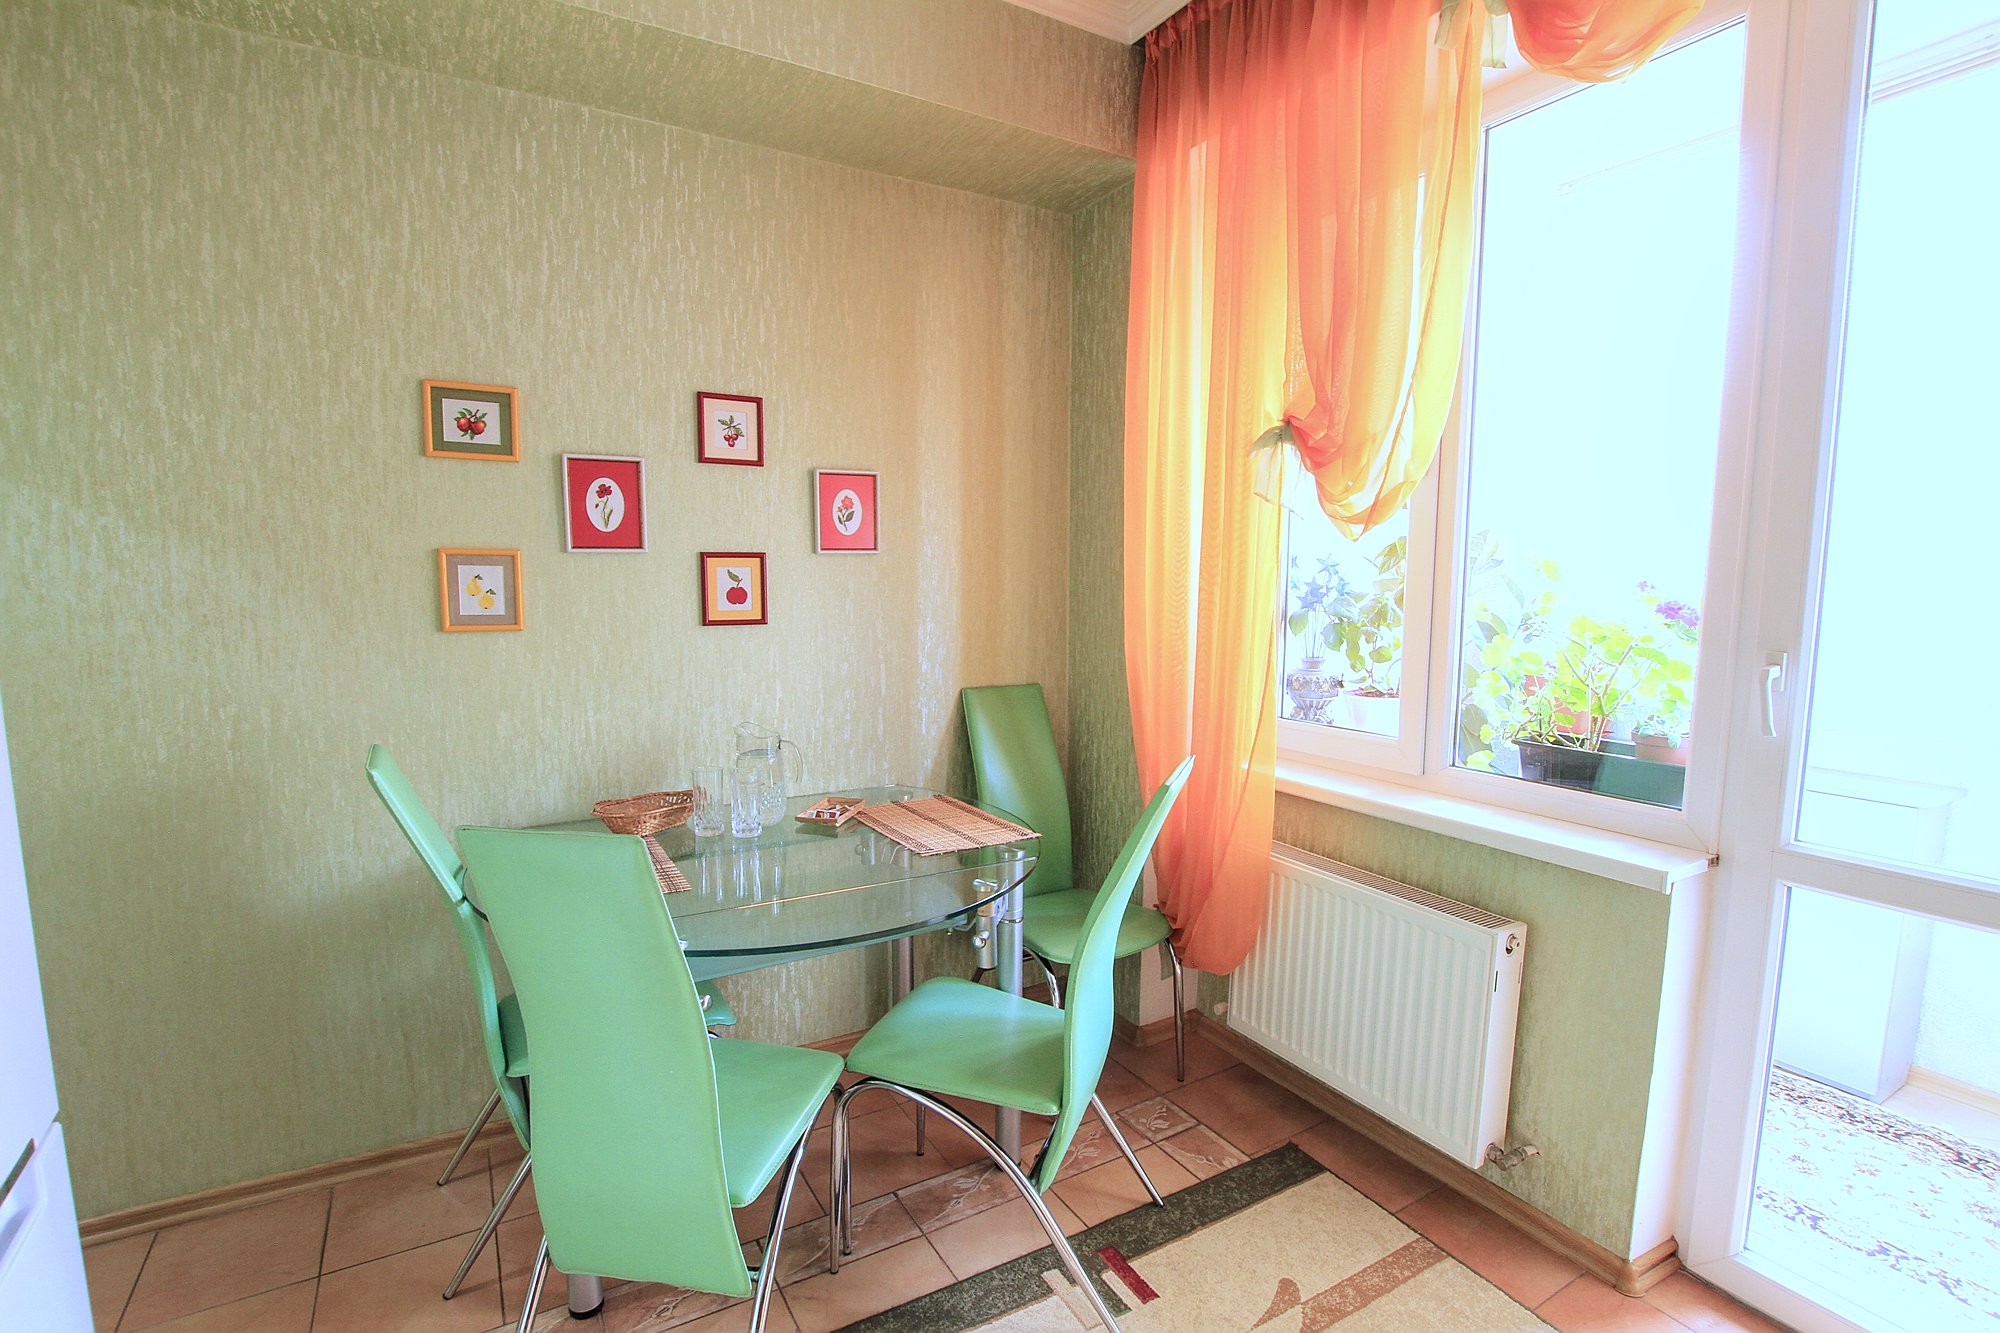 Mieten Sie ein Studio mit einer blumigen Terrasse: 1 Zimmer, 1 Schlafzimmer, 53 m²